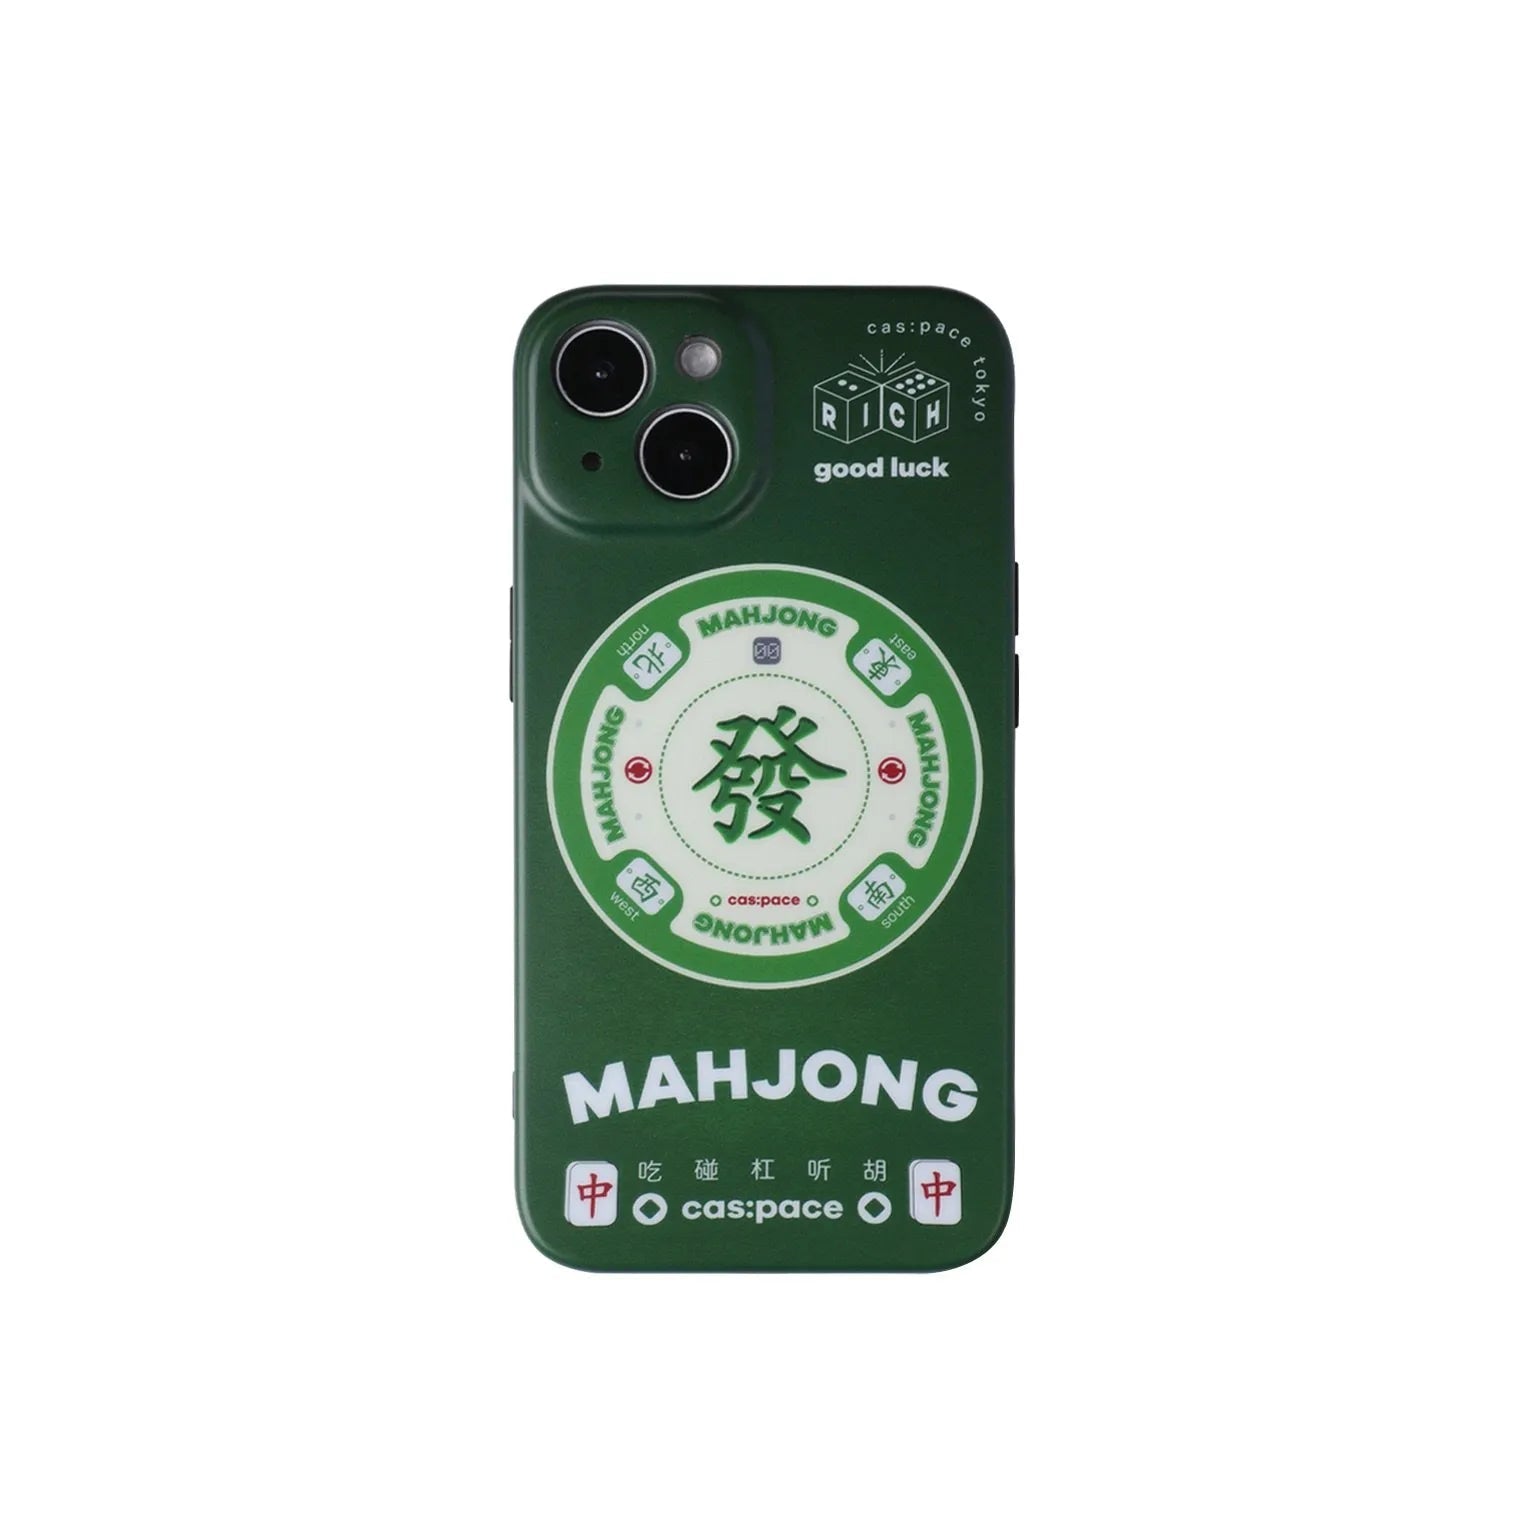 cas:pace 22A/W「mahjong」携帯ケース - cas:pace 殼空間